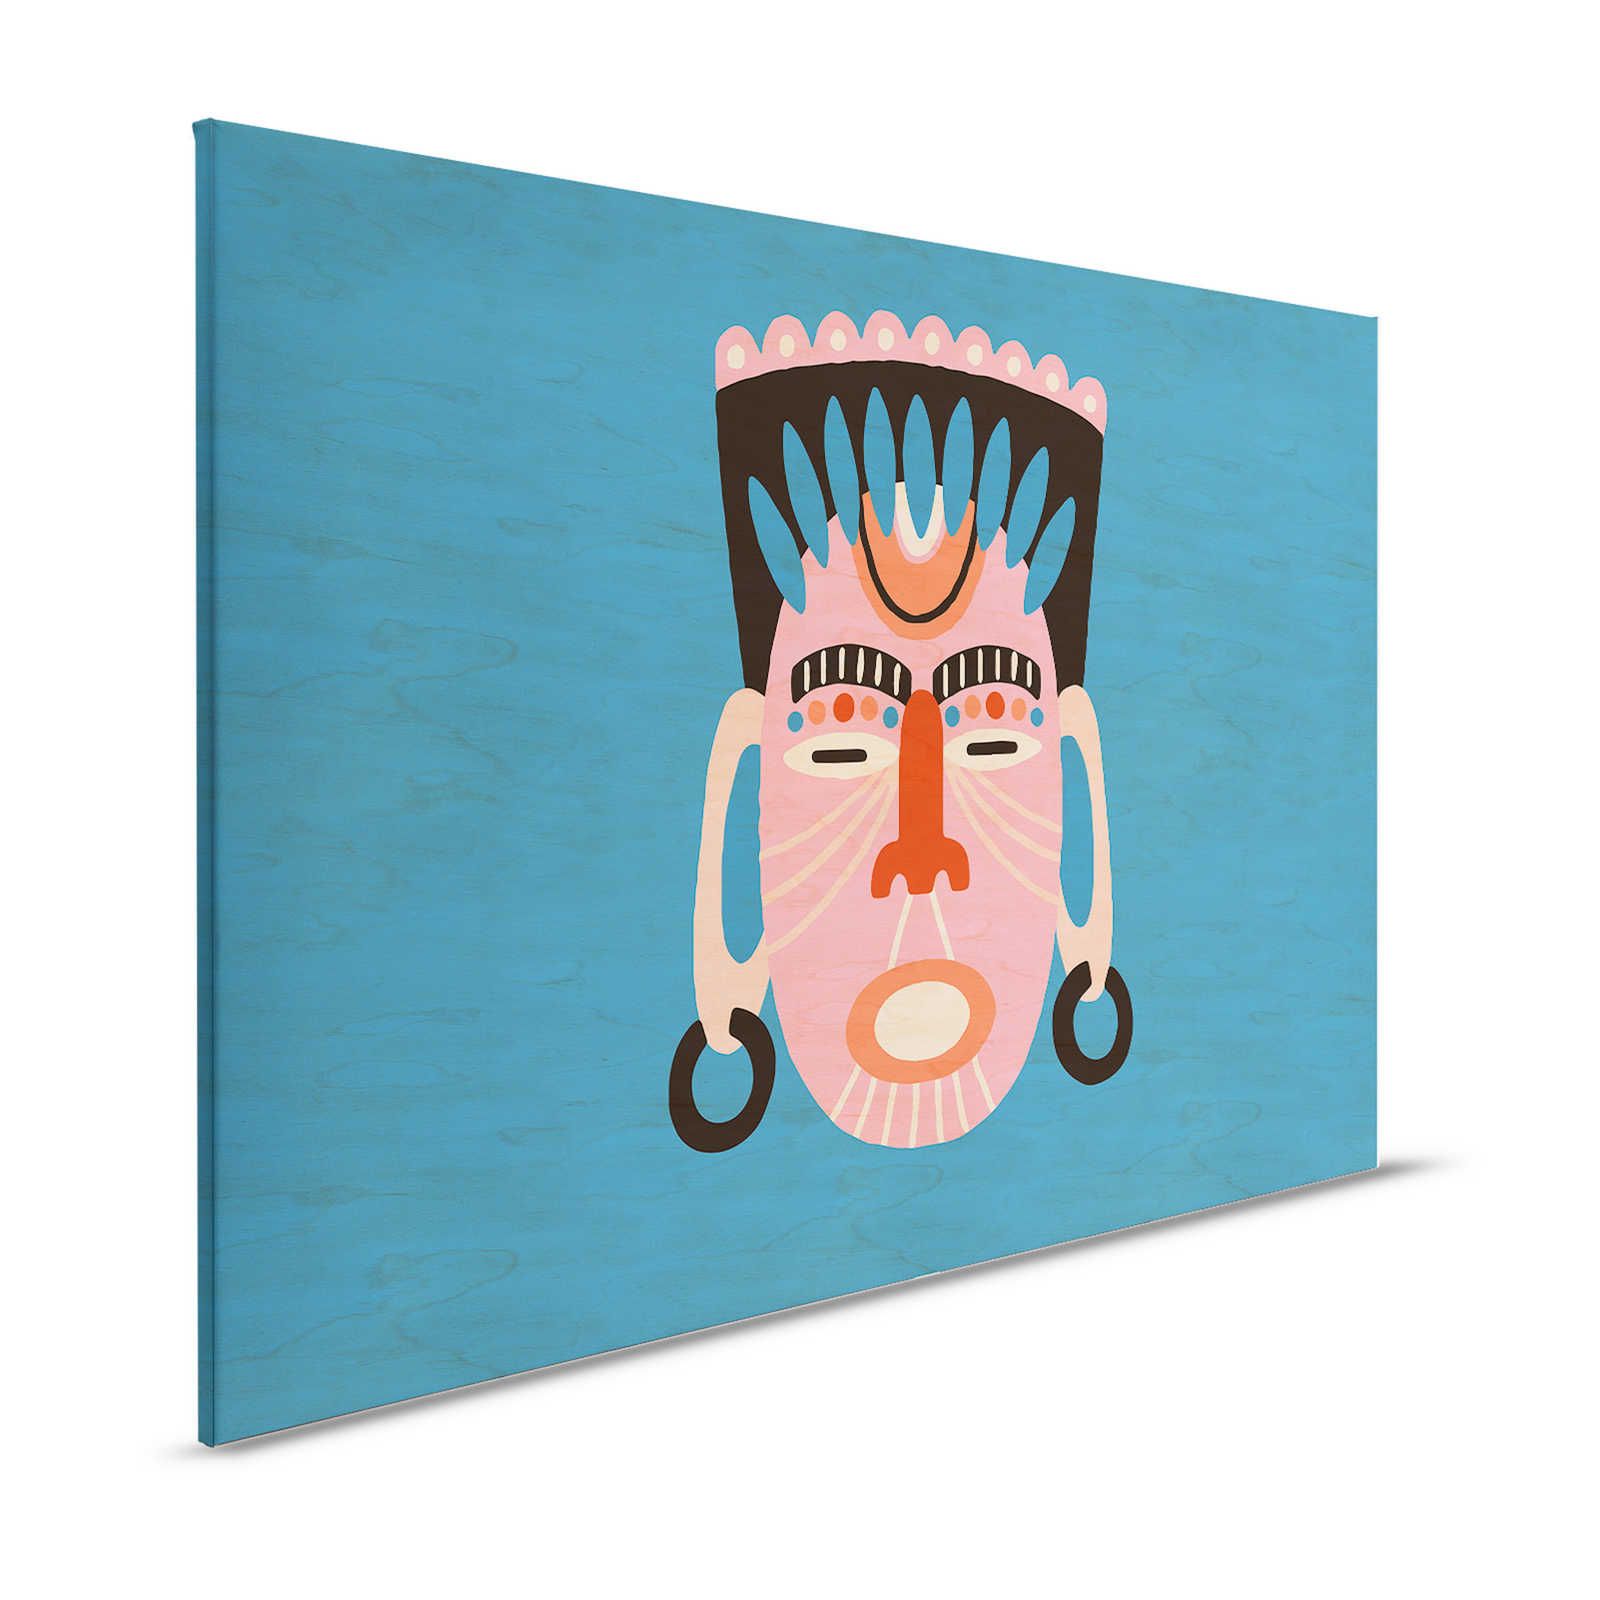 Oltremare 3 - Tela blu con disegno etnico e maschera - 1,20 m x 0,80 m
